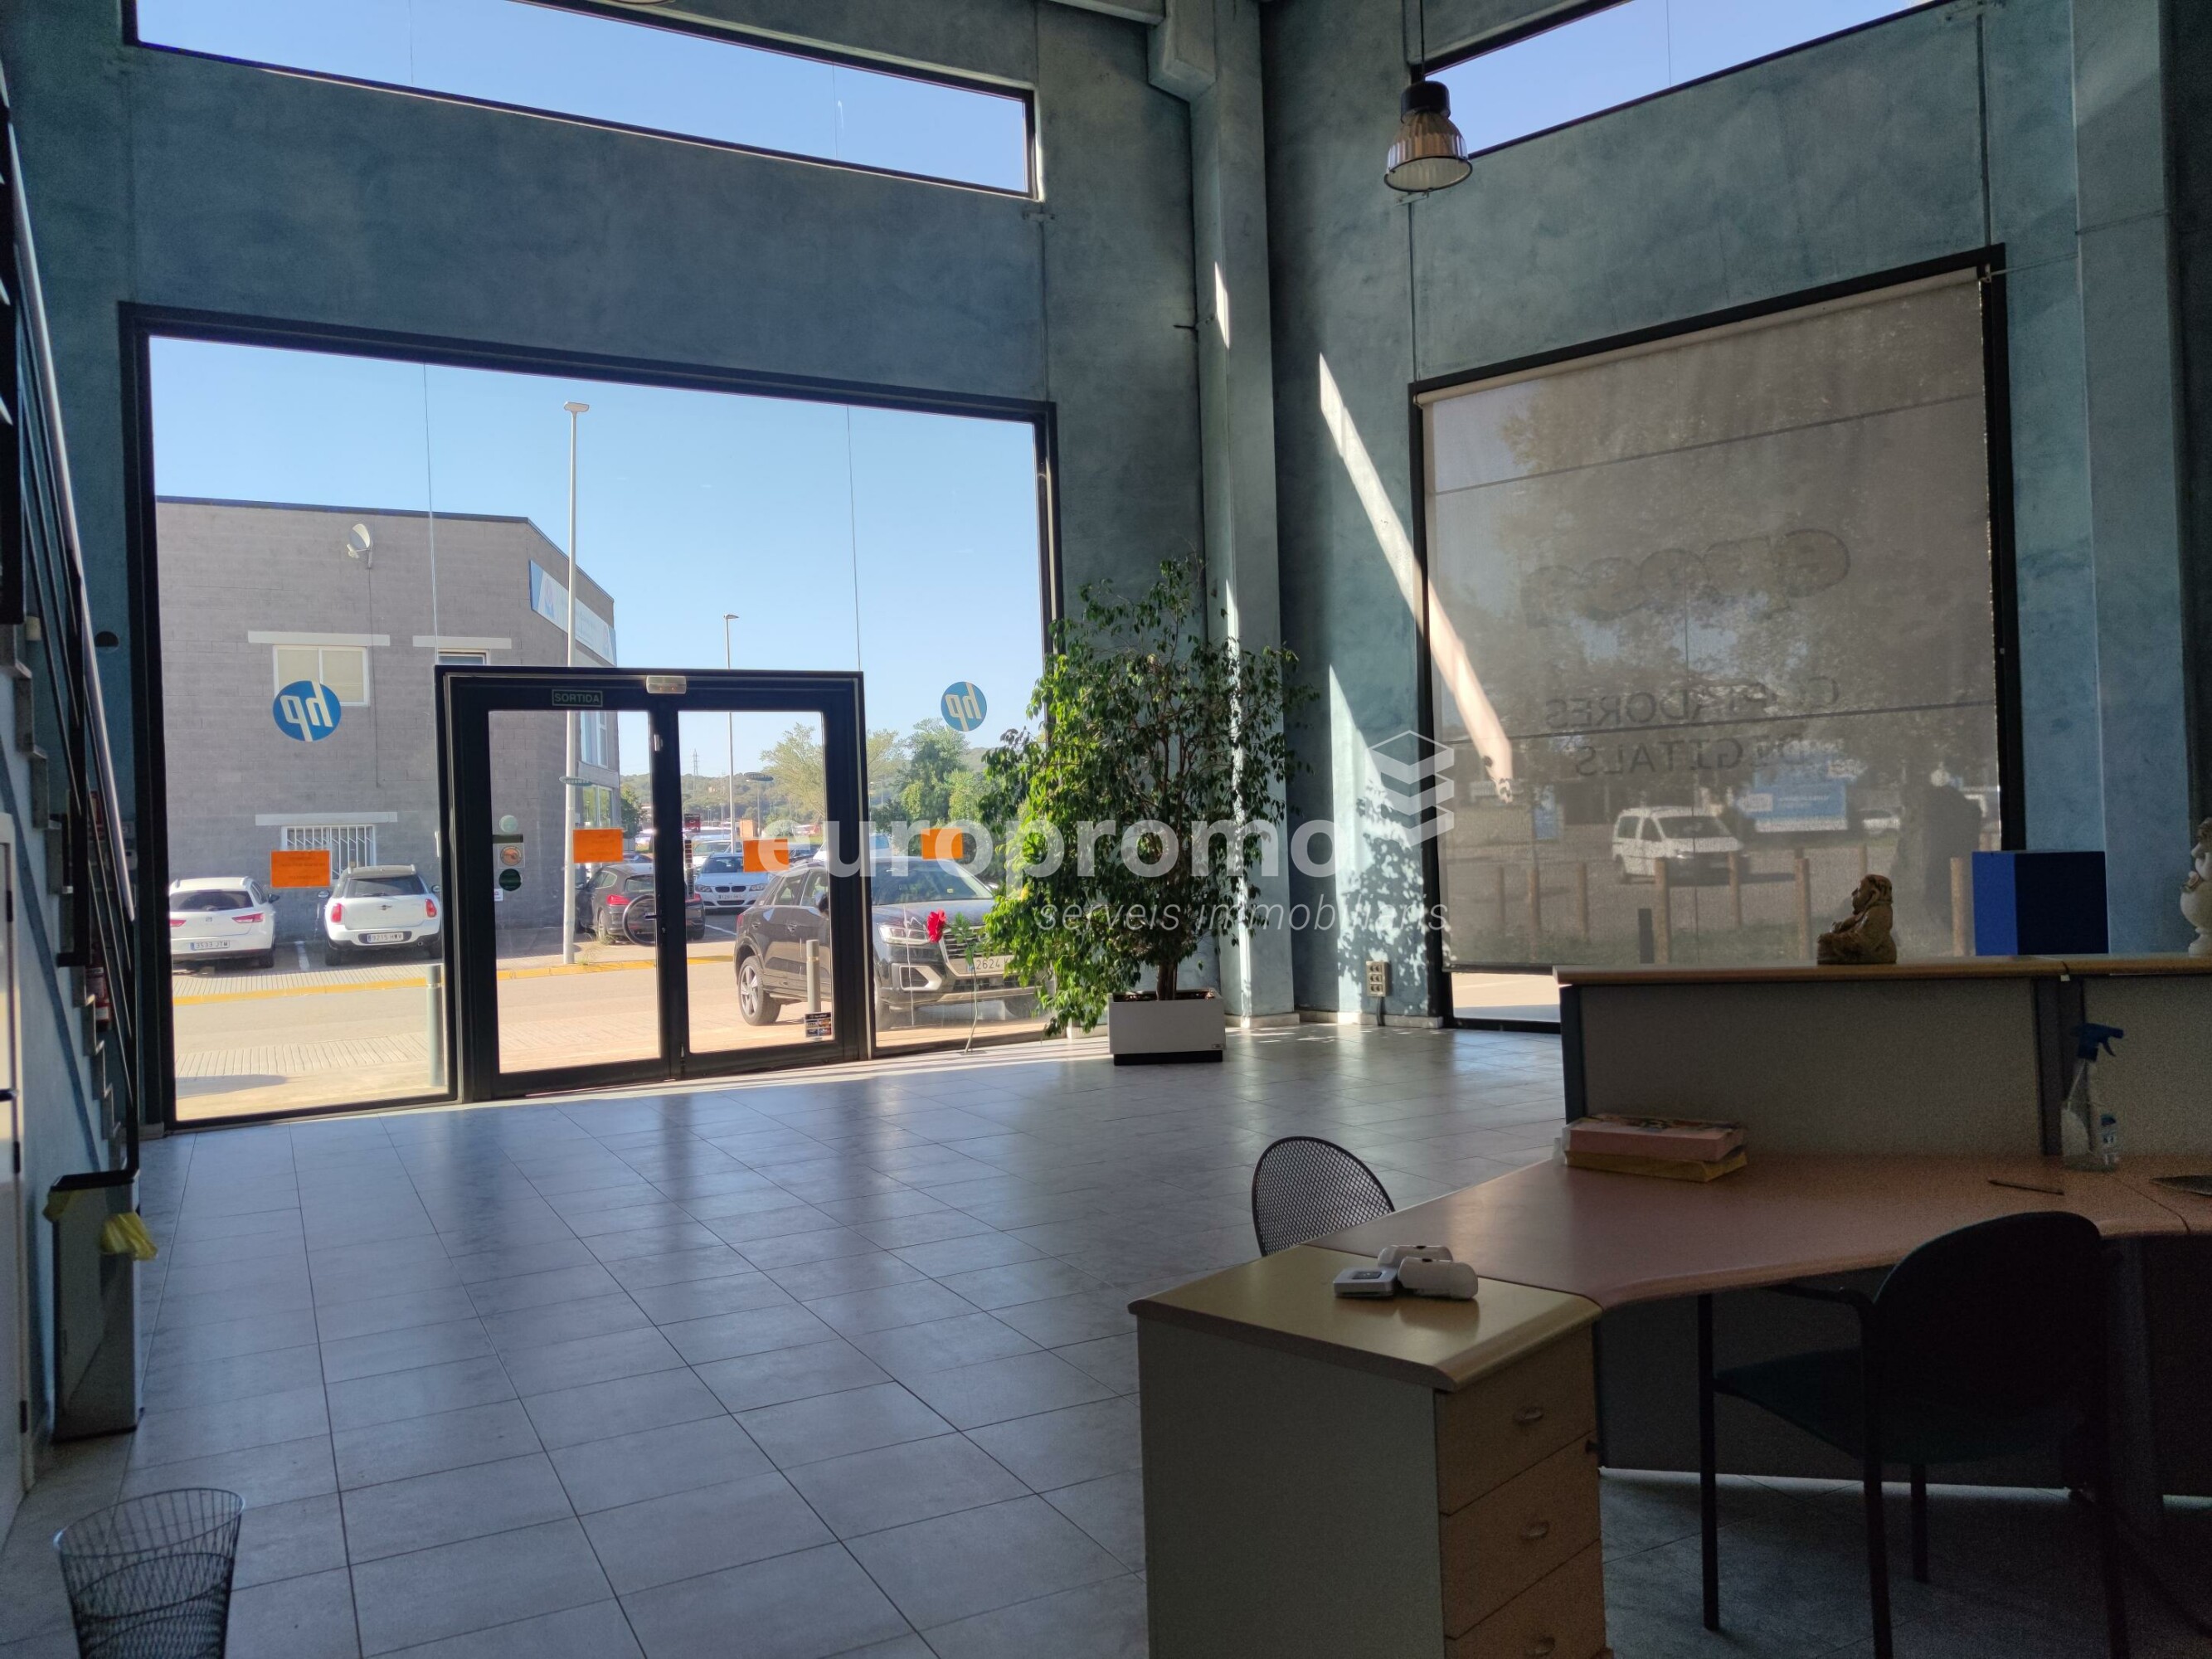 Oficines amb local comercial i amb magatzem  al Pol. Ind. Torre Mirona - Montfullà